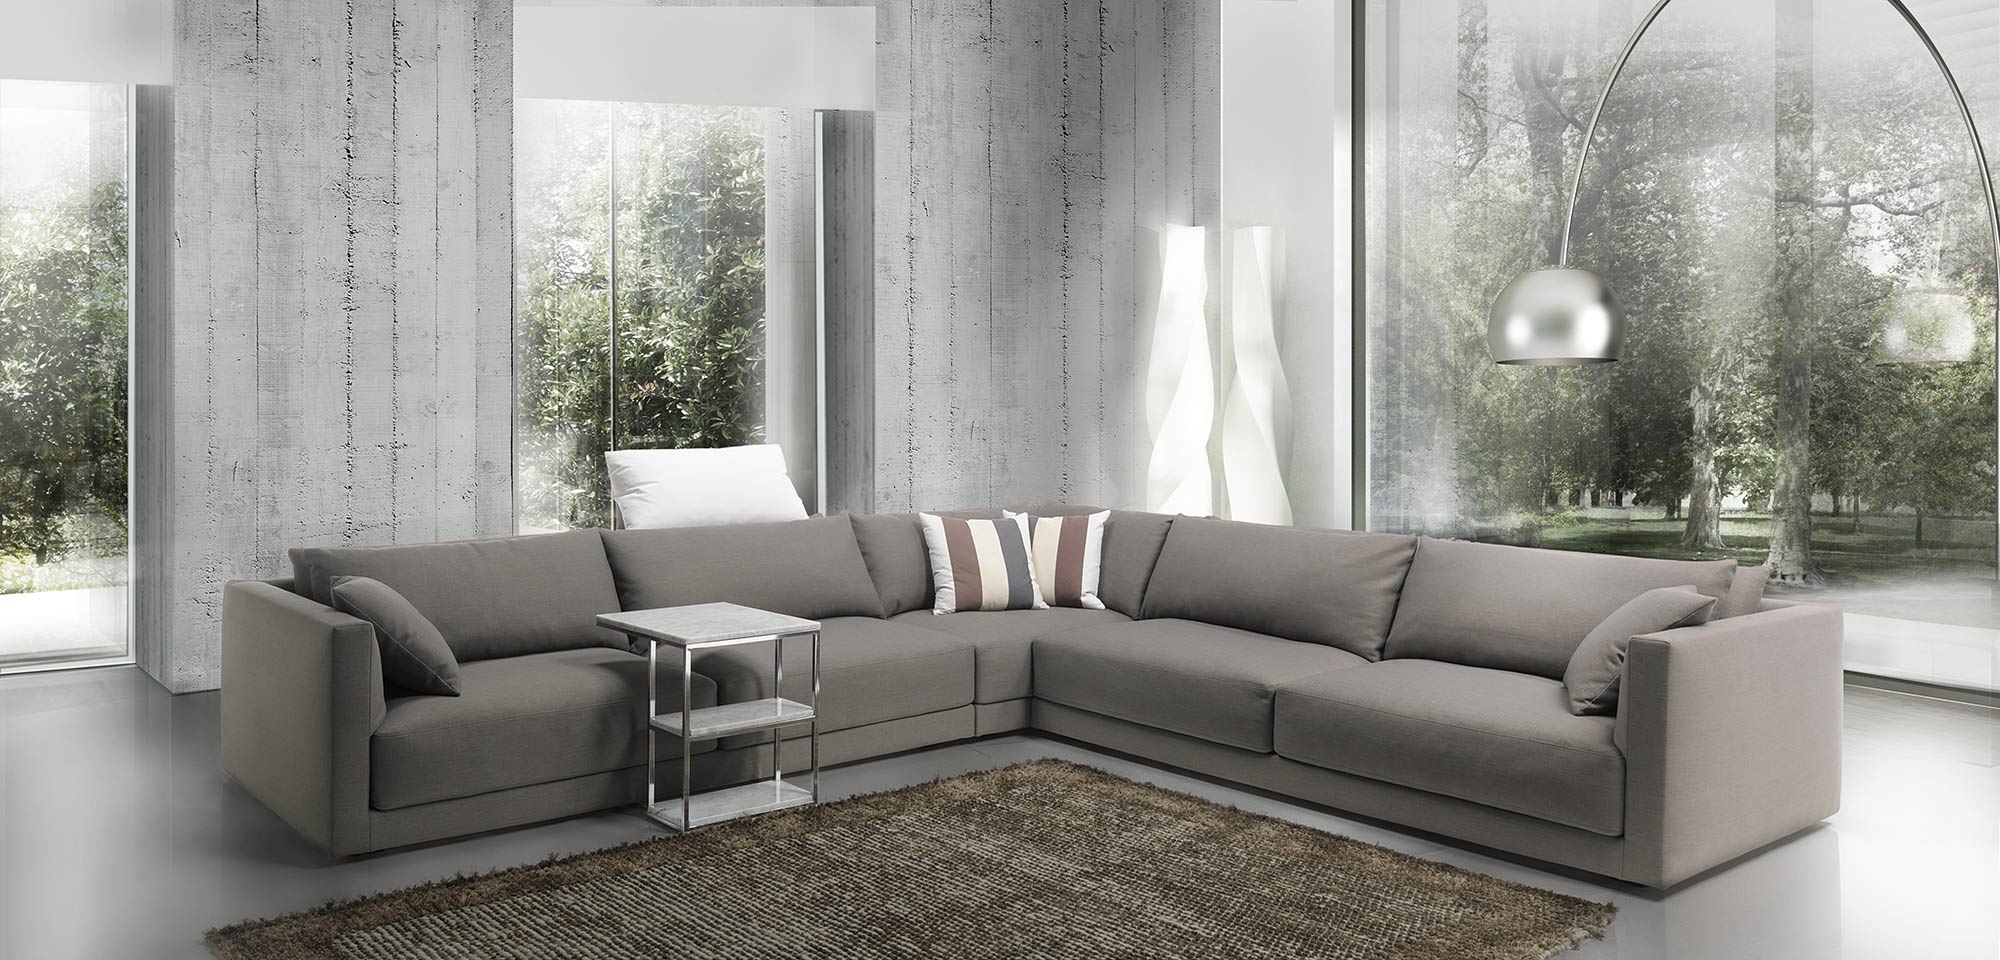  divano a Milano divano moderno alessia